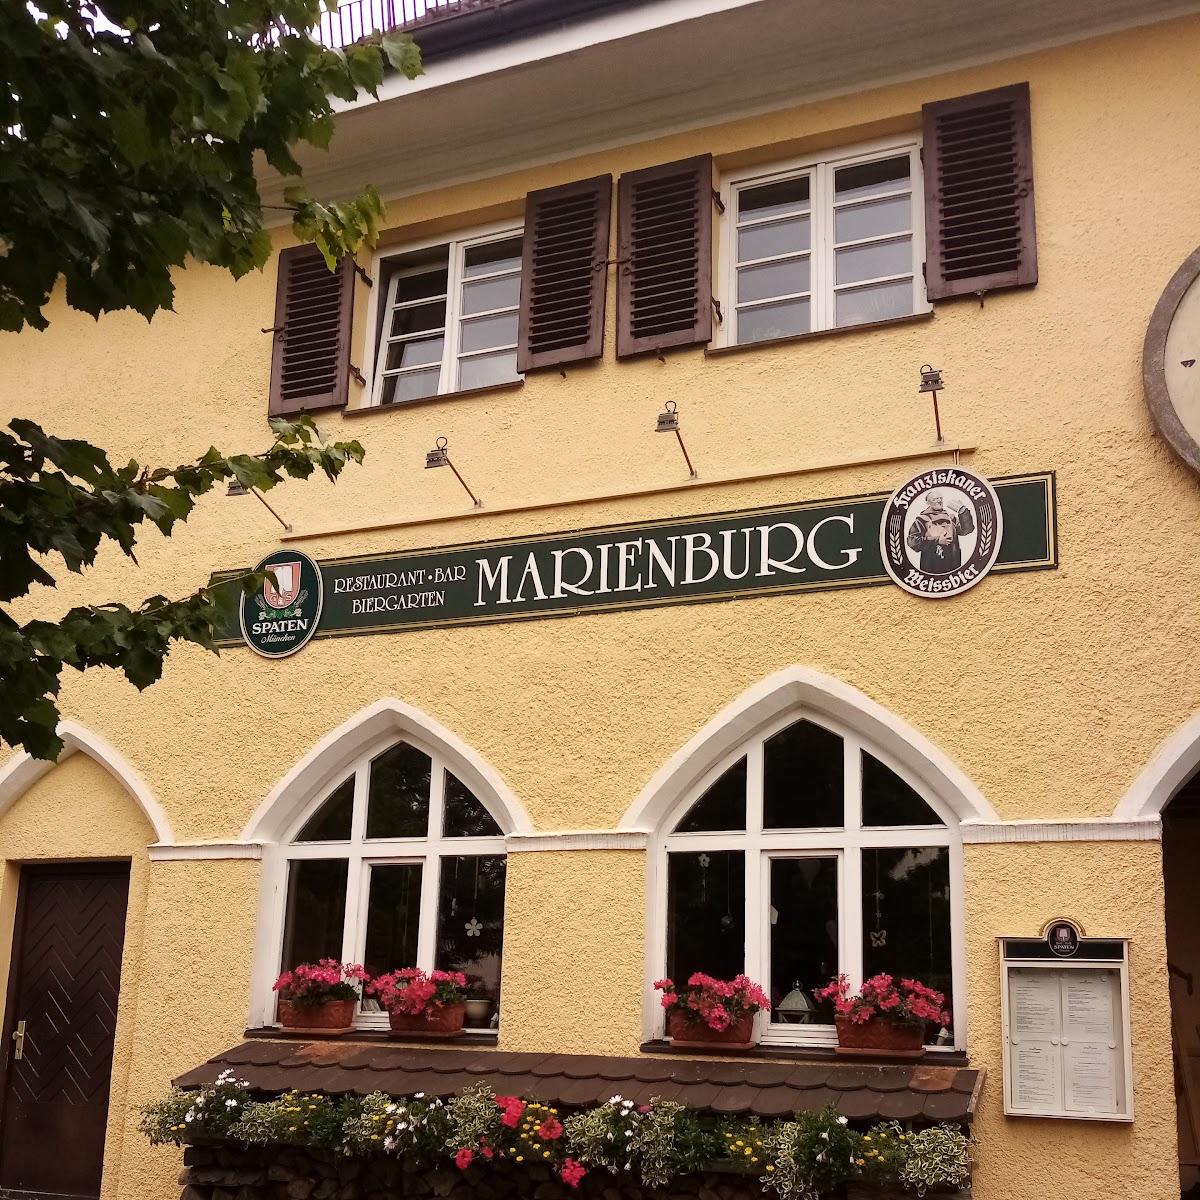 Restaurant "Wirtshaus zur Marienburg" in München